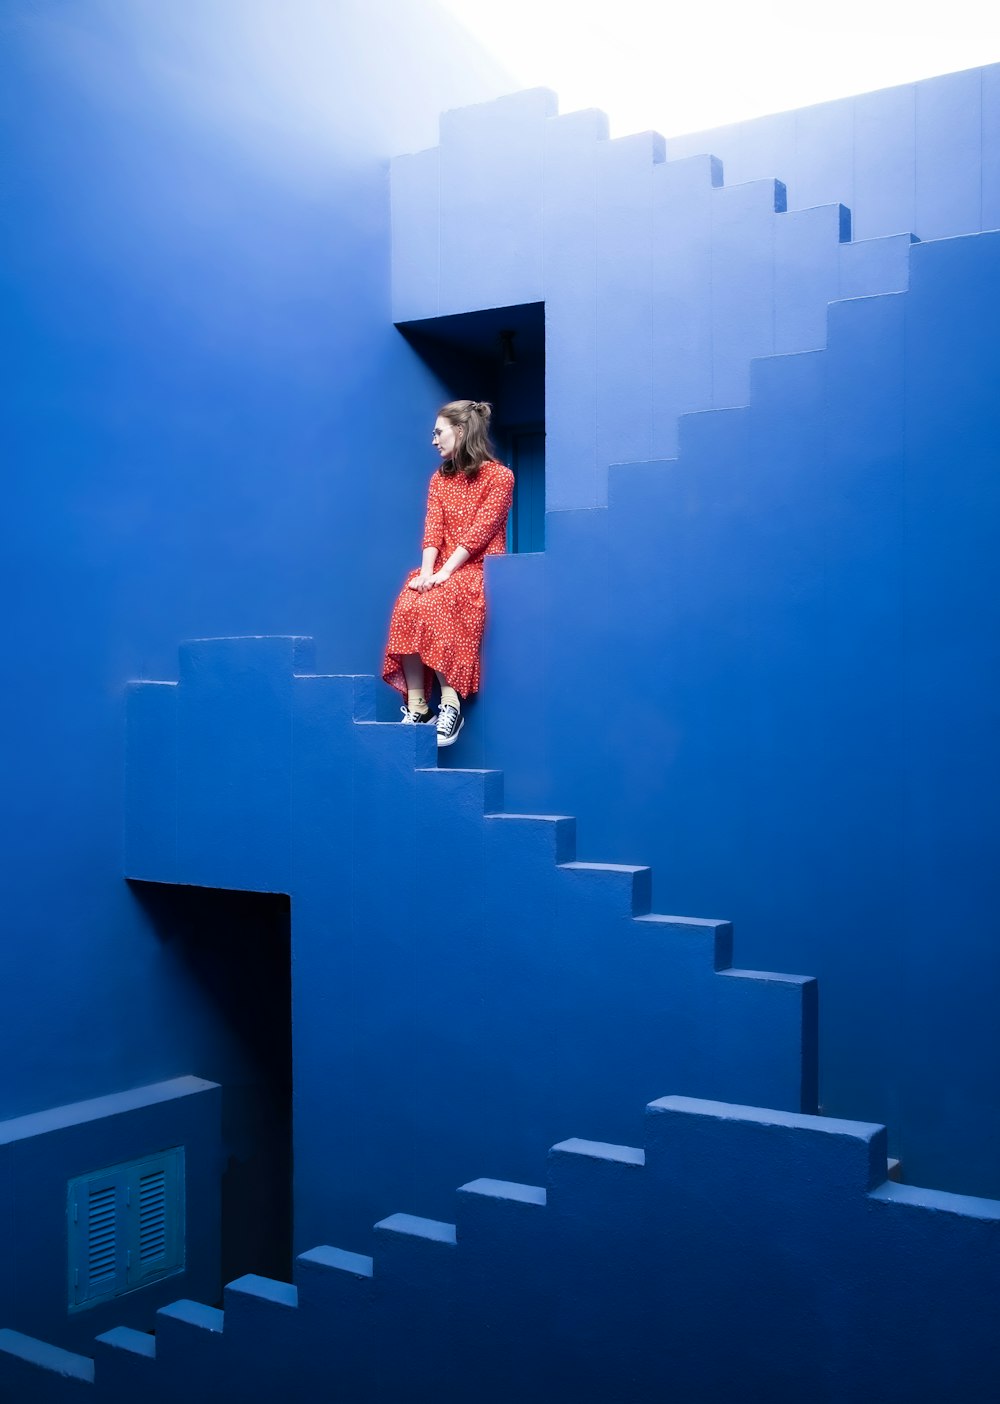 빨간 드레스를 입은 여자가 파란 계단에 앉아 있다